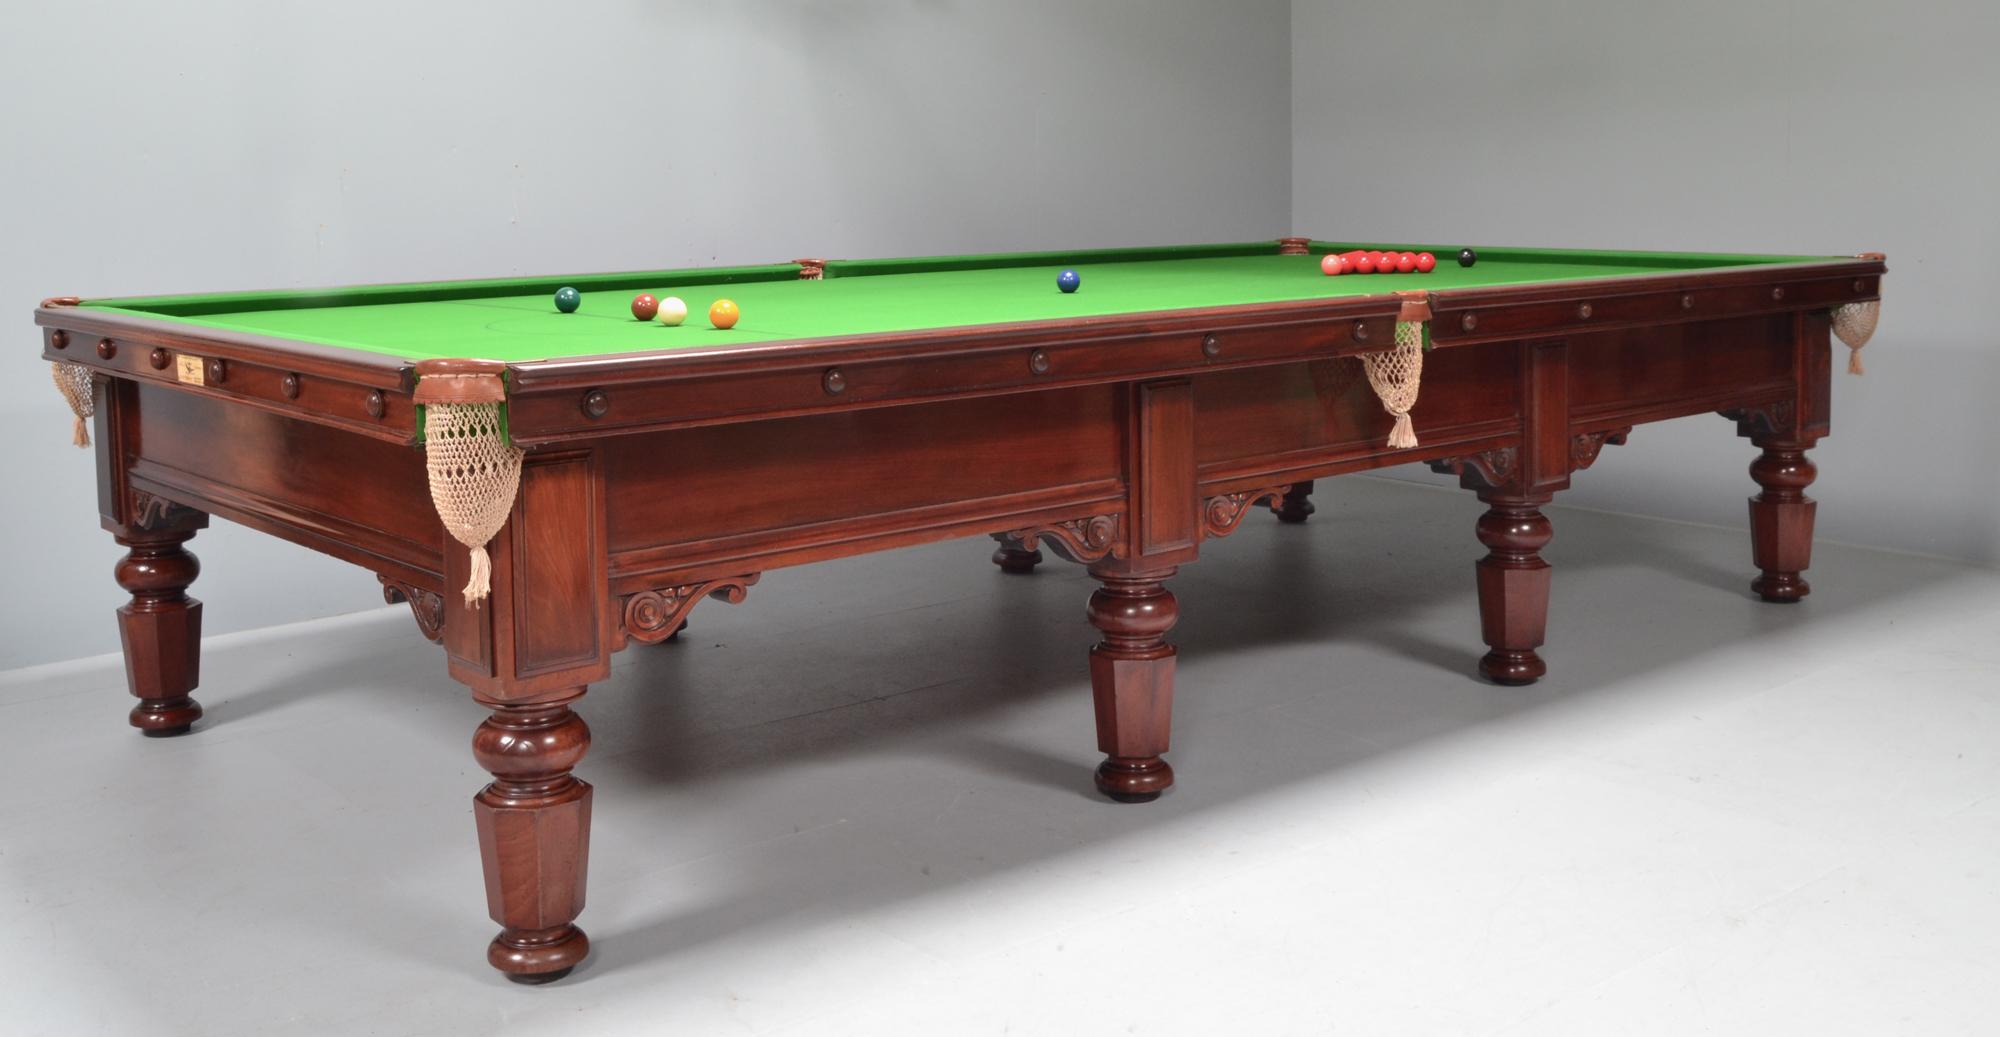 Antiker Snookertisch oder antiker Billardtisch von Thurston London England.

Eine sehr gute Qualität 